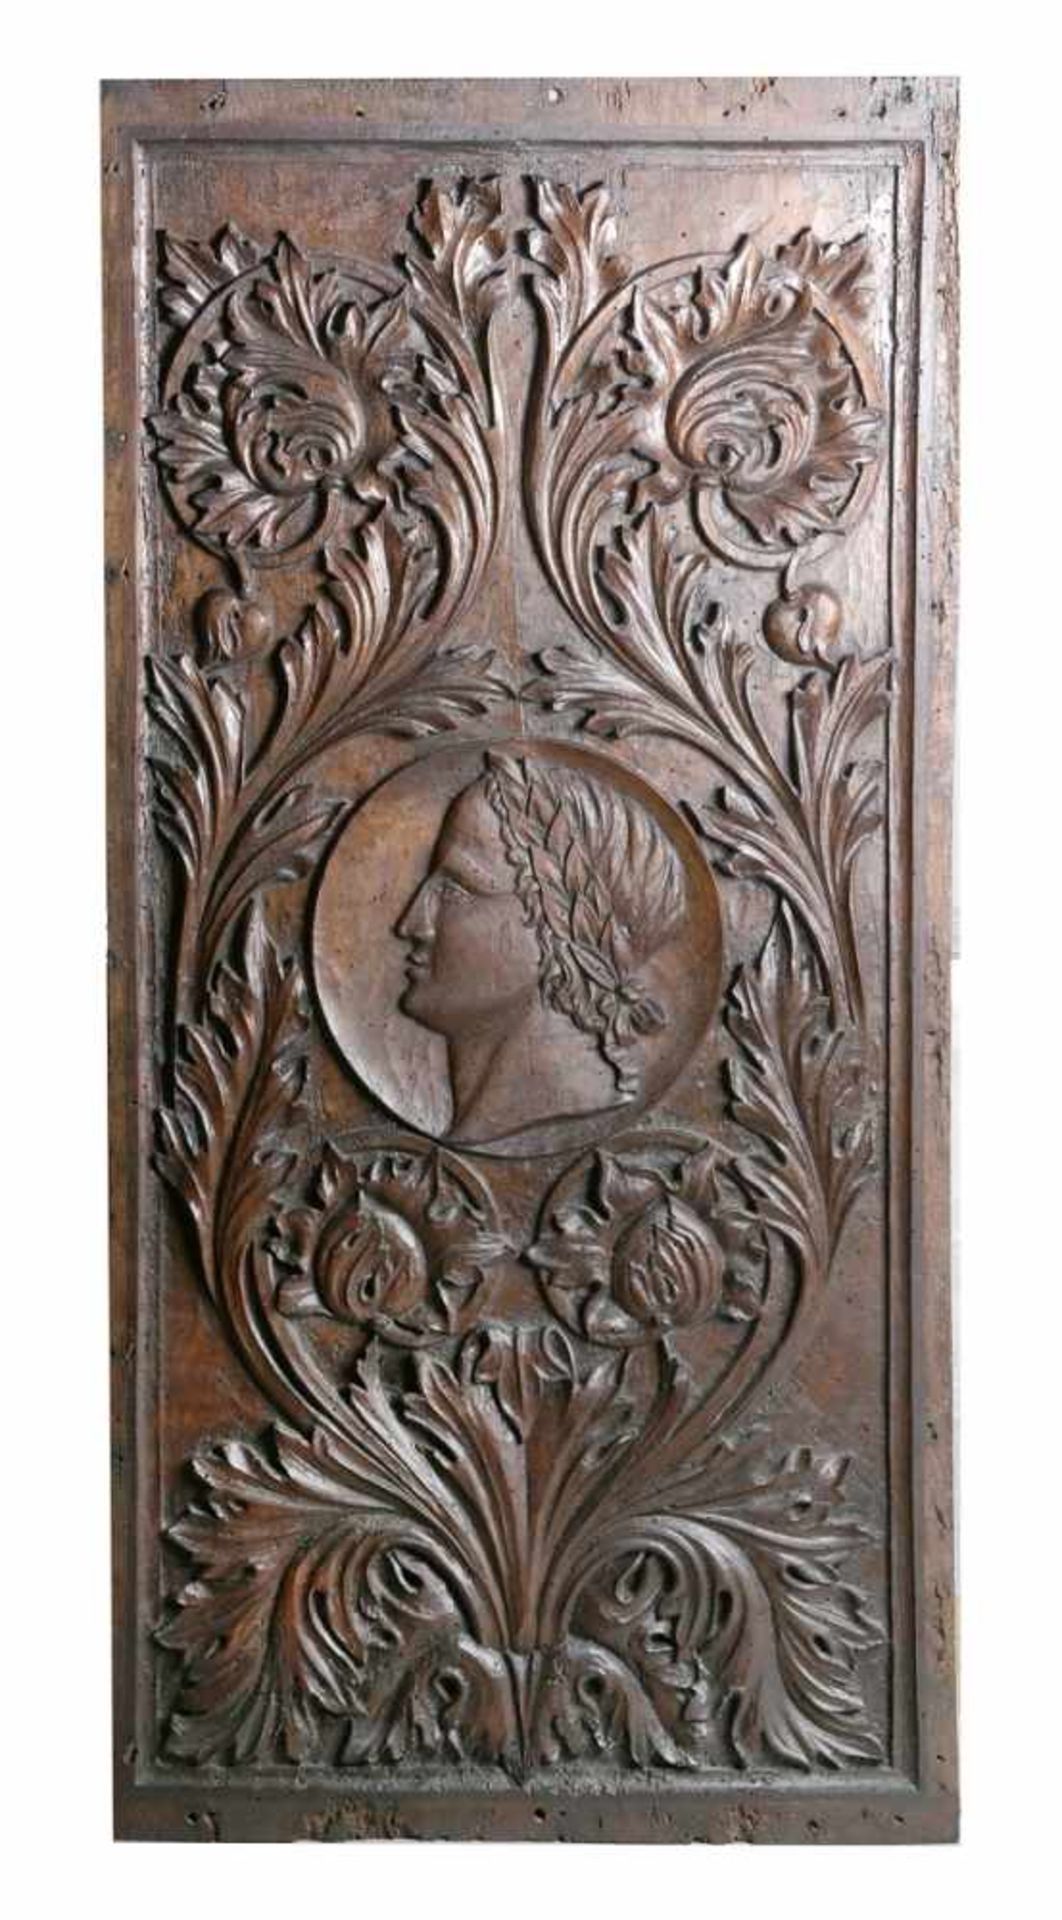 Holz-Relieftafel, 19. Jh., ehemals Türfüllung, hochrechteckige Form, reliefplastischebeschnitzt